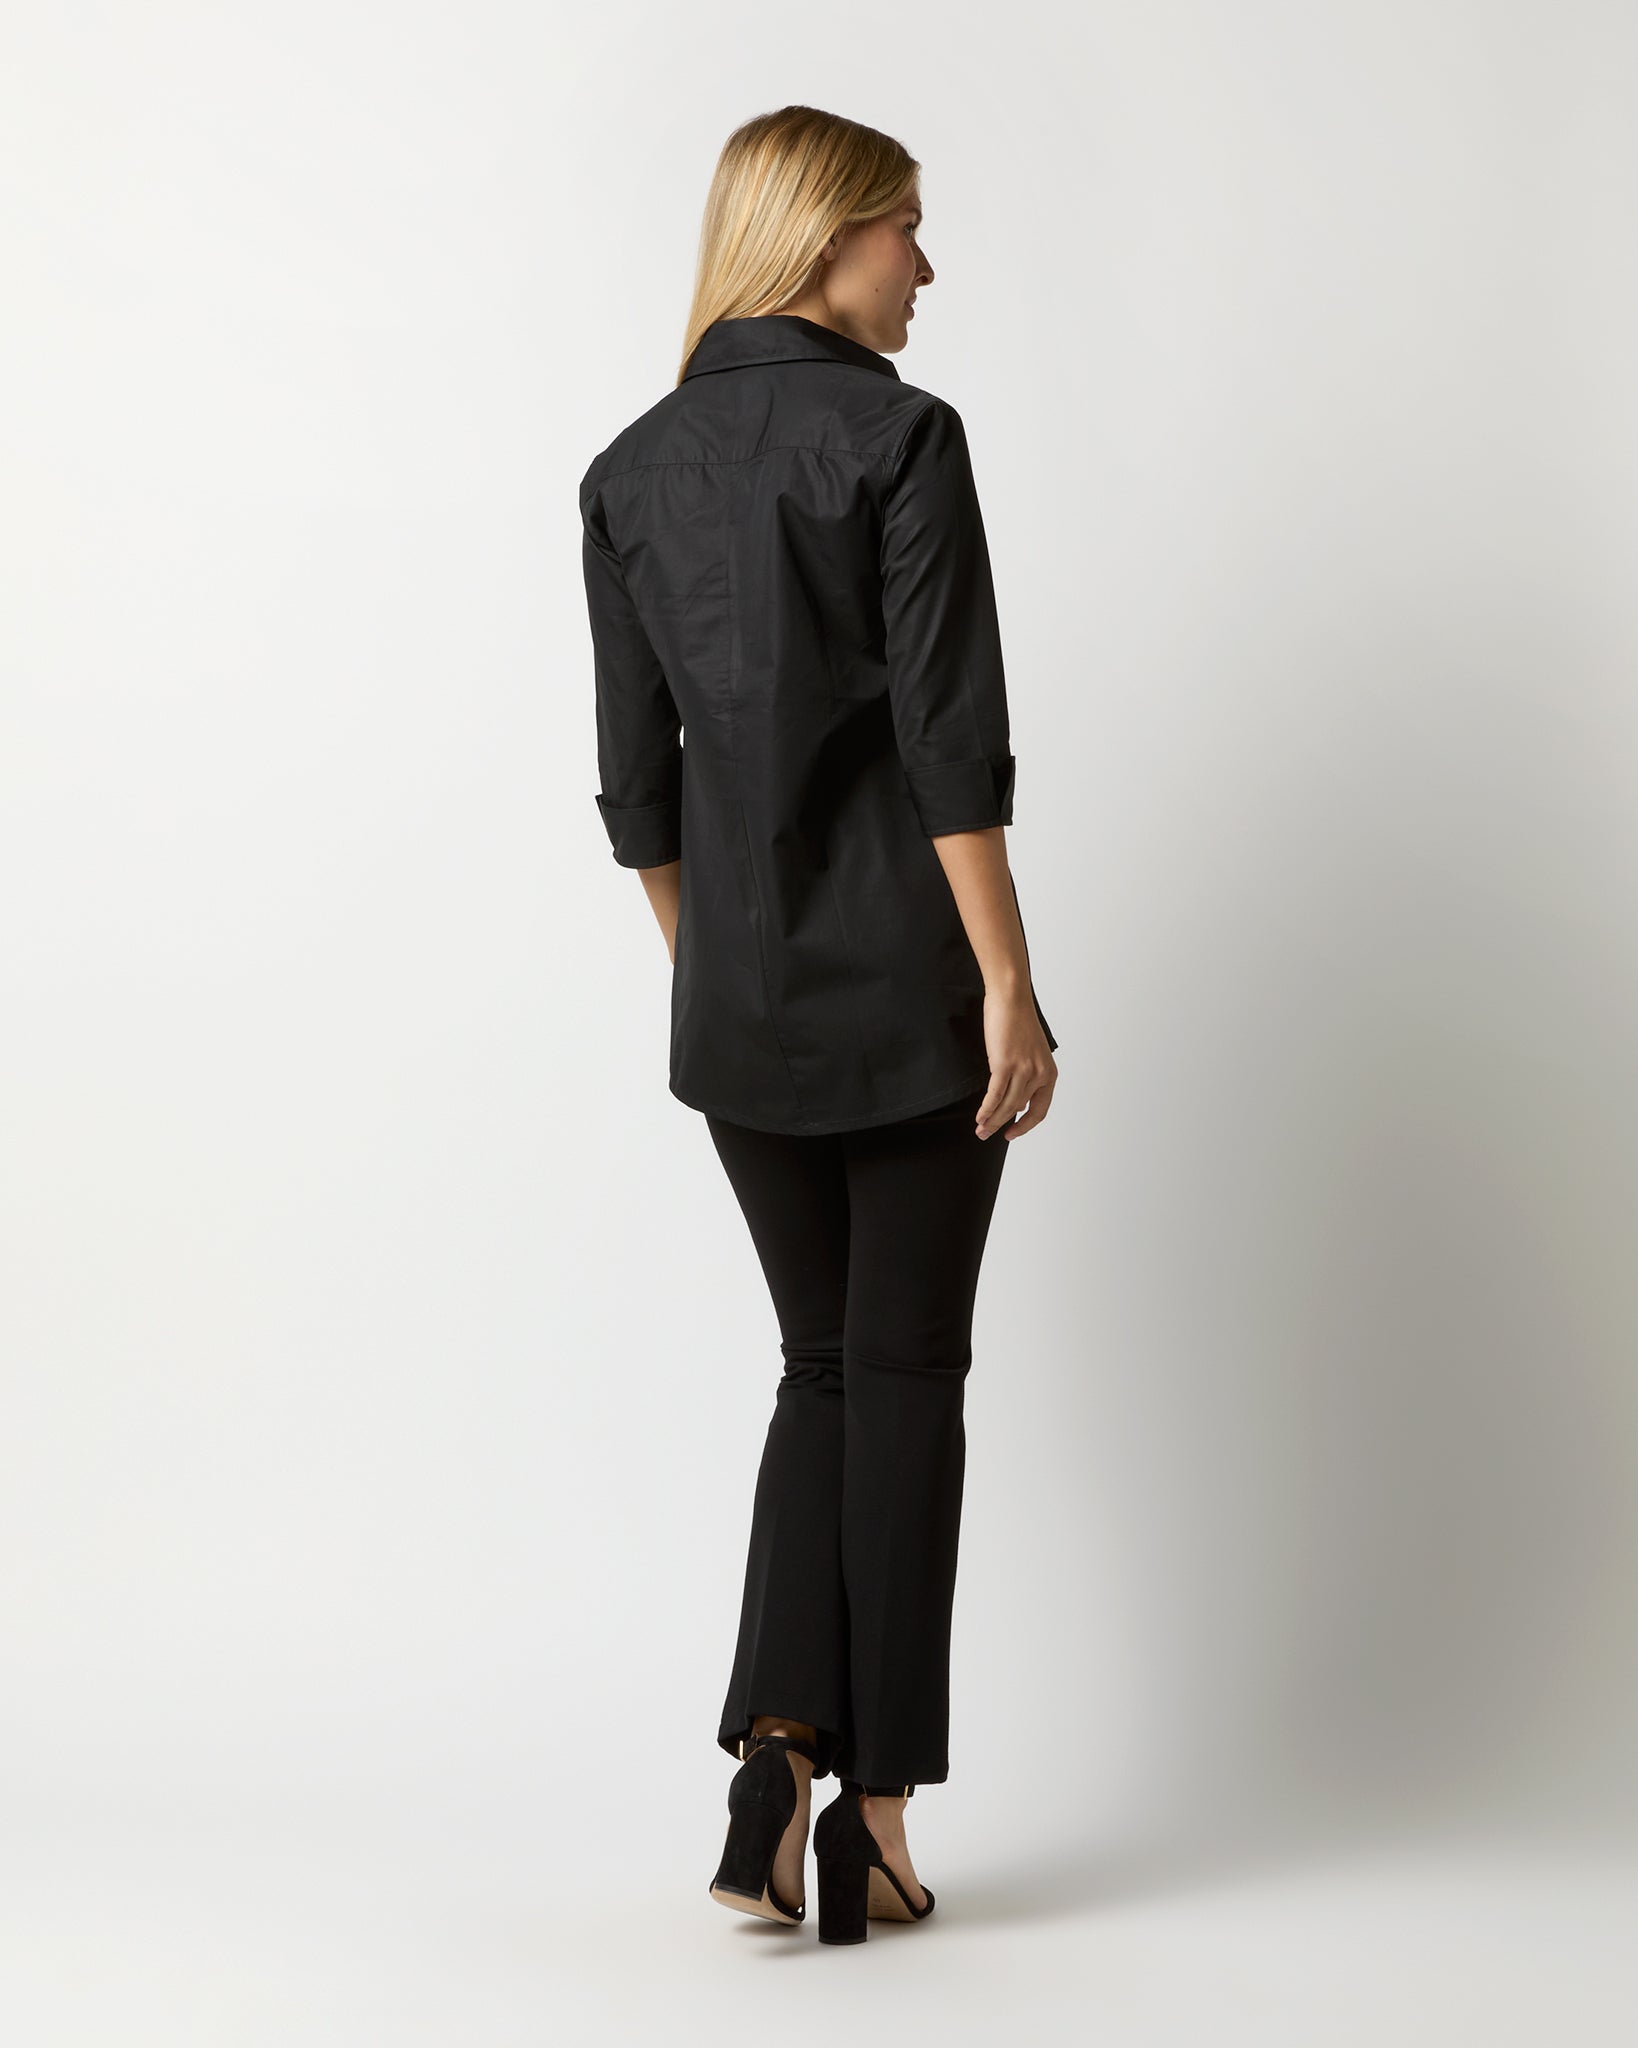 Designer Tunic in Black Poplin